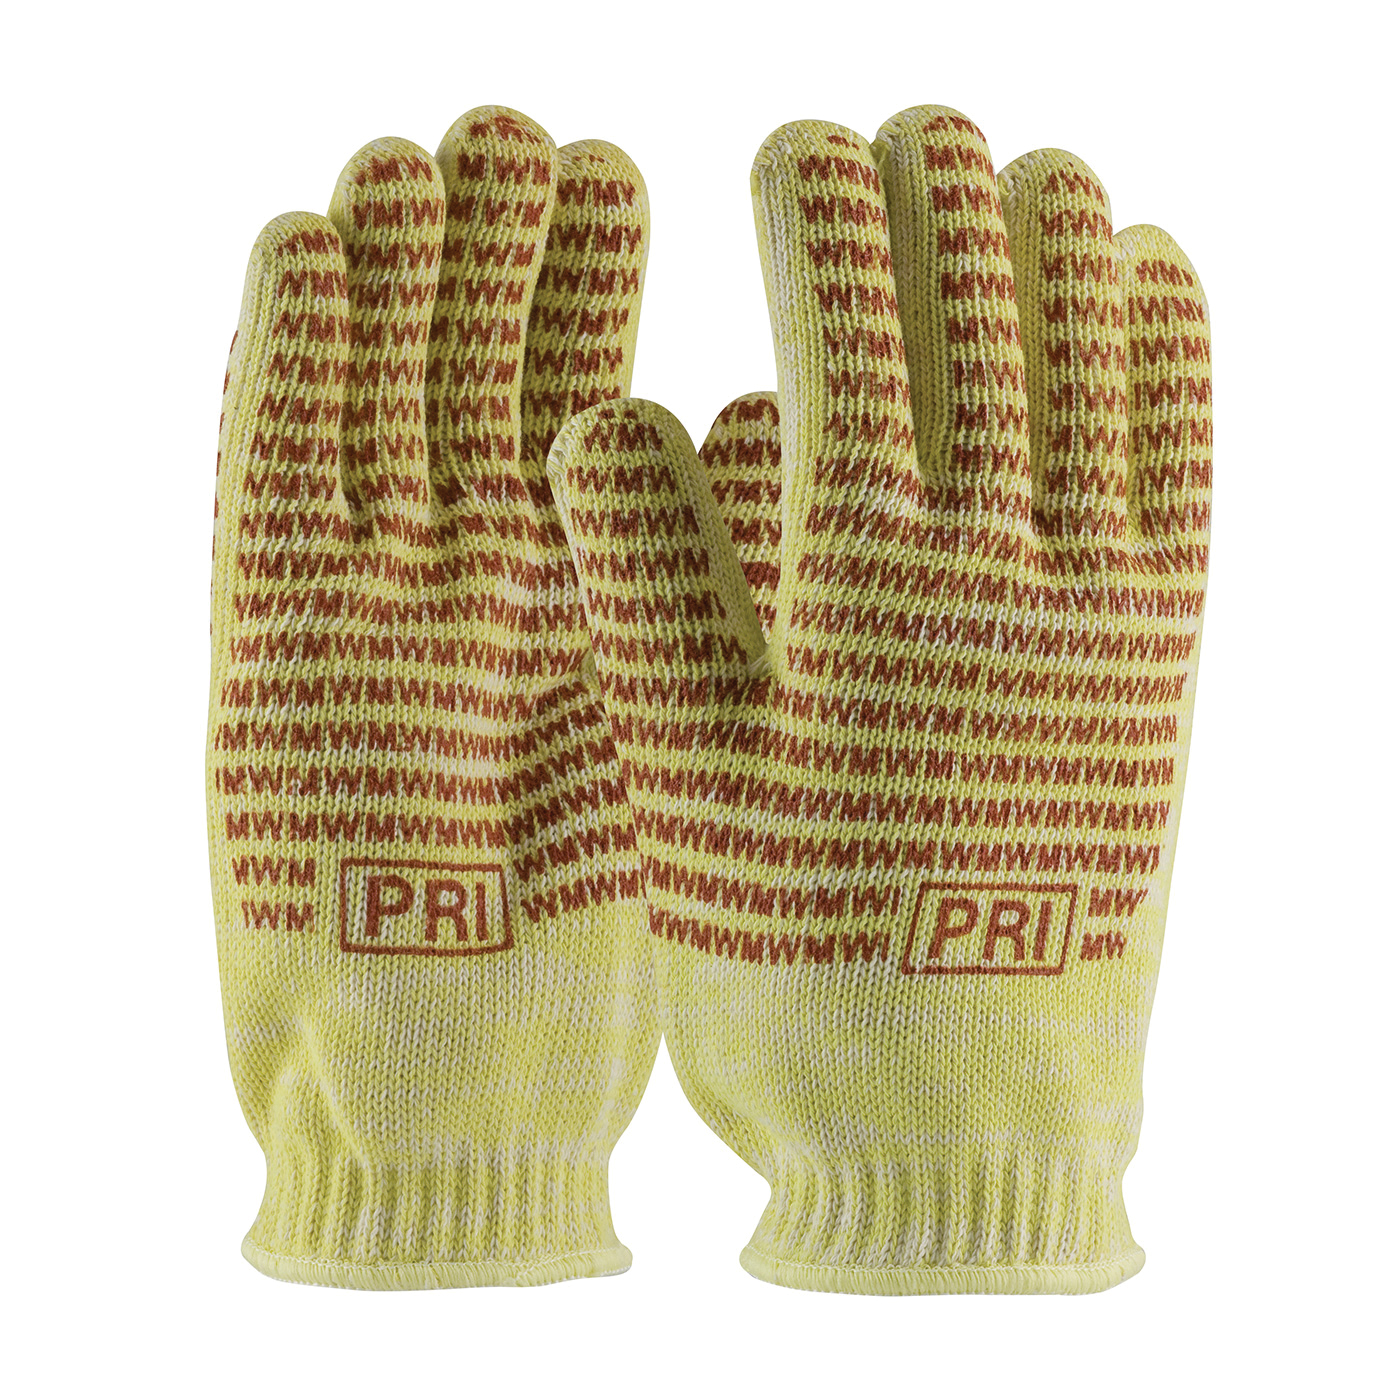 14 22 oz. PBI/KEVLAR® High Heat Glove – Test Steel Grip